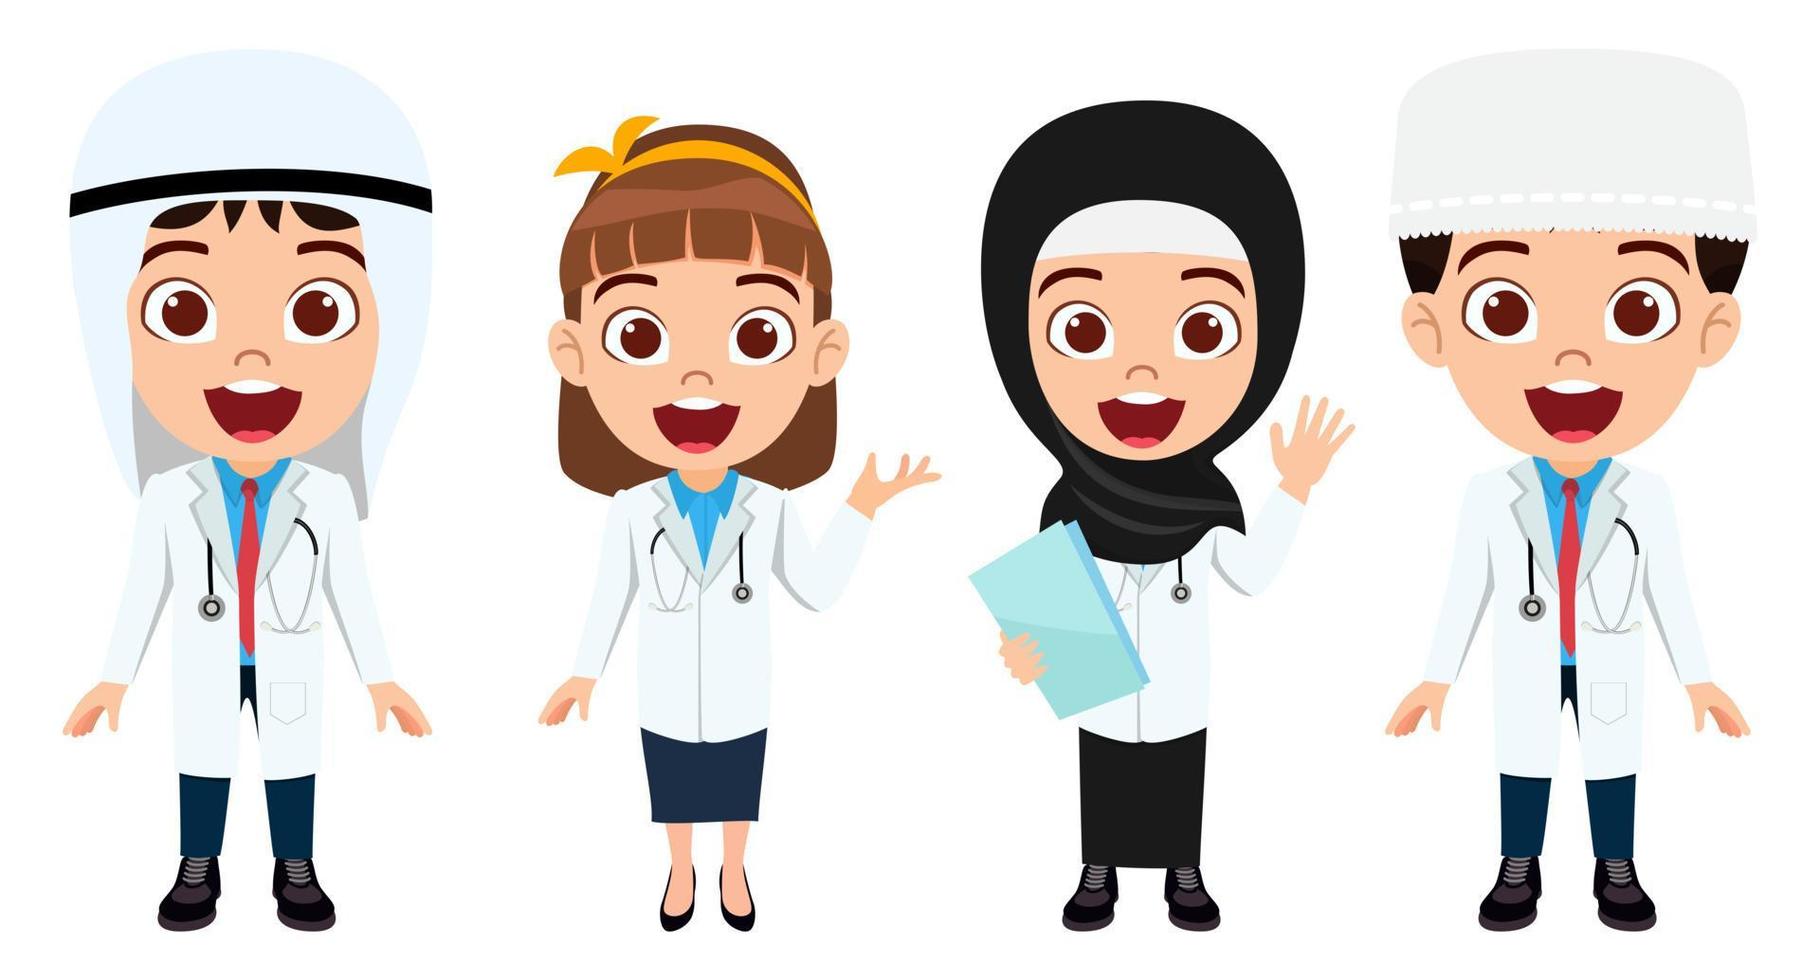 garoto fofo feliz menino e menina médico enfermeira personagem vestindo roupa de médico e enfermeira árabe muçulmano em pé com uma expressão alegre isolada vetor